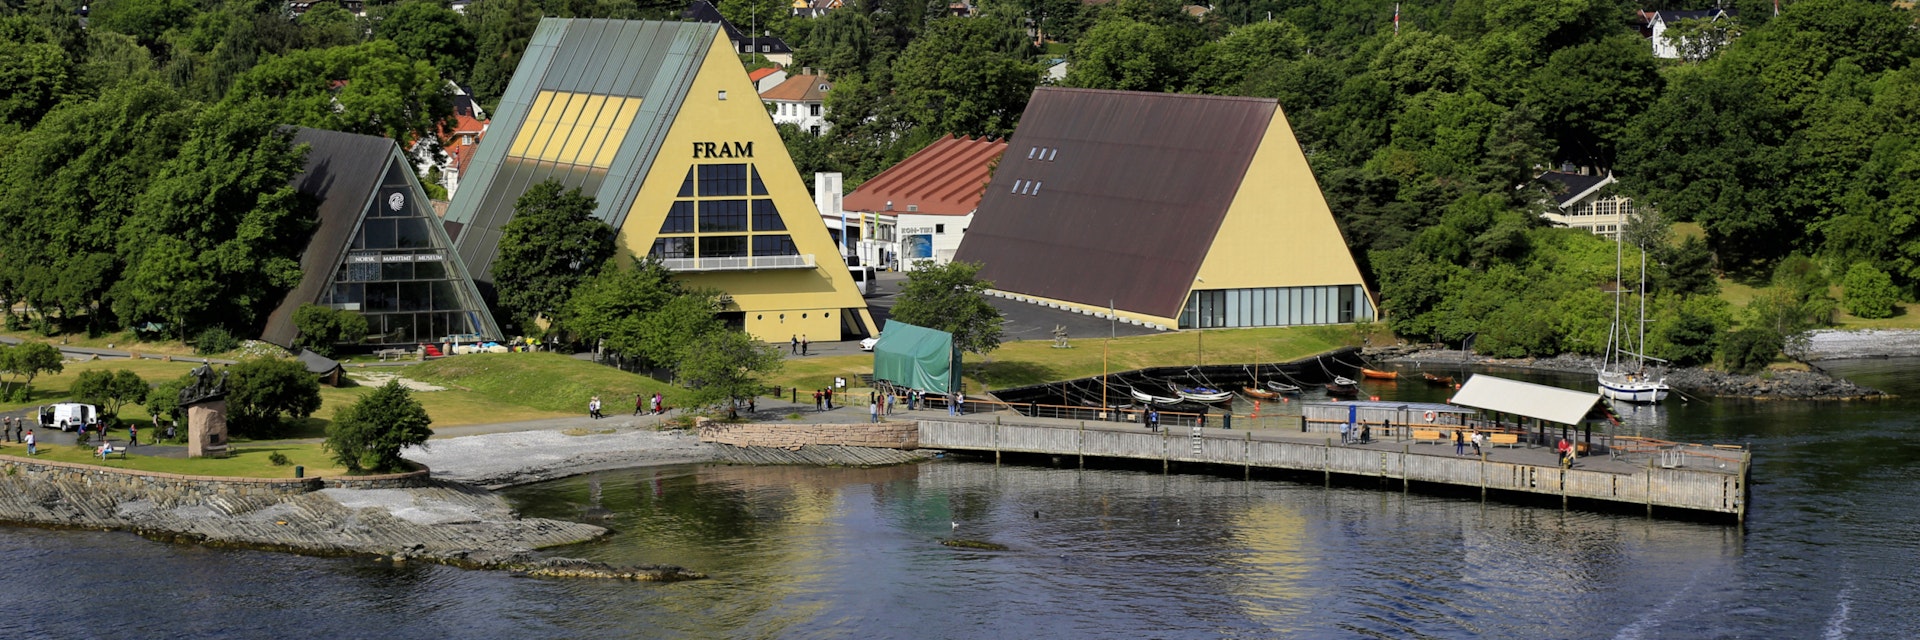 Fram Museum, Bygdoy, Oslo, Norway